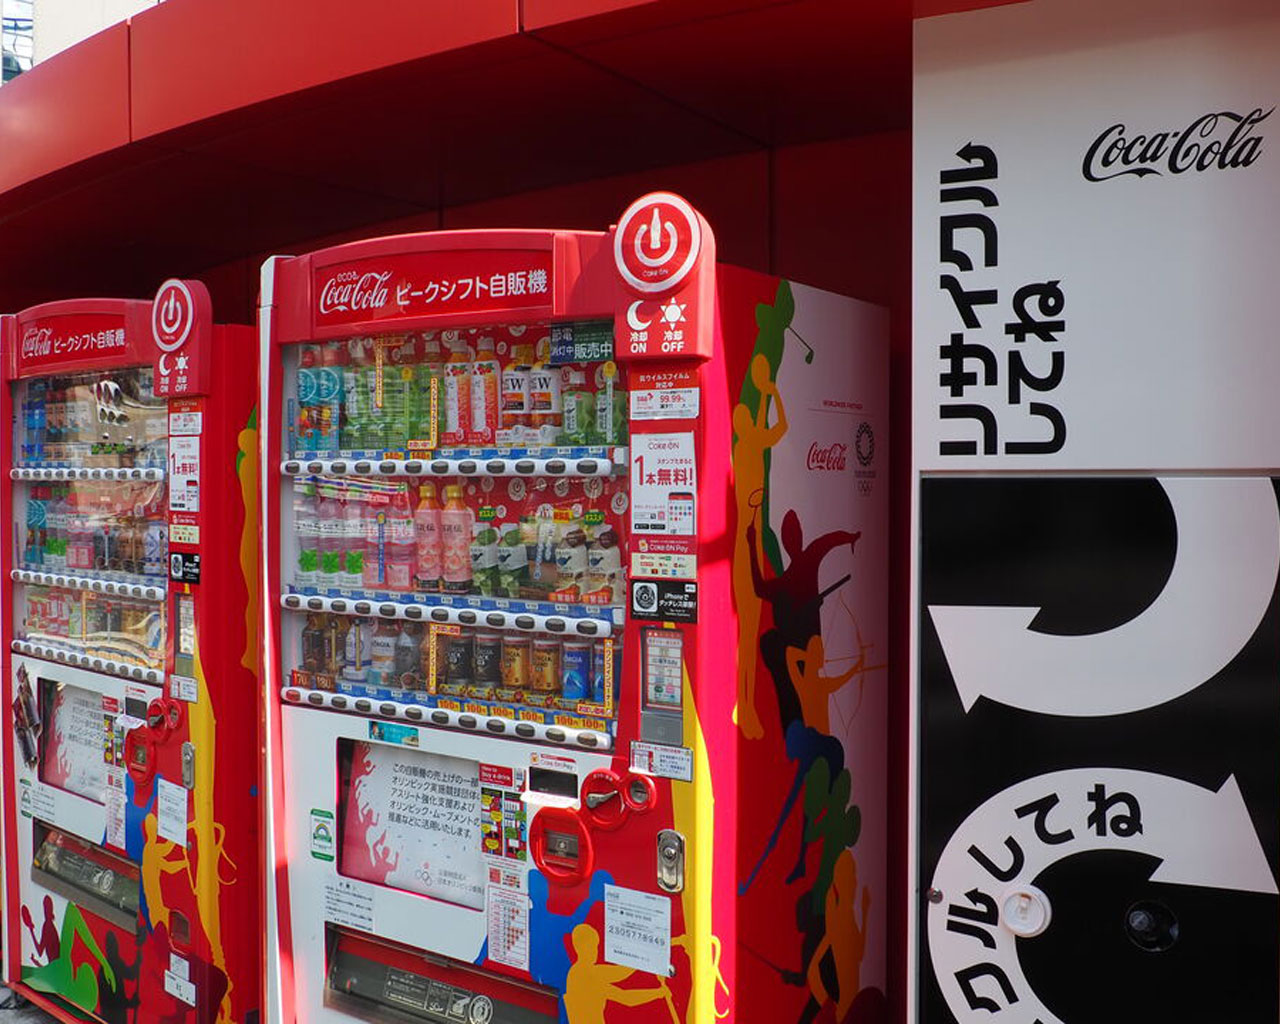 コカ・コーラの自動販売機が使用中です